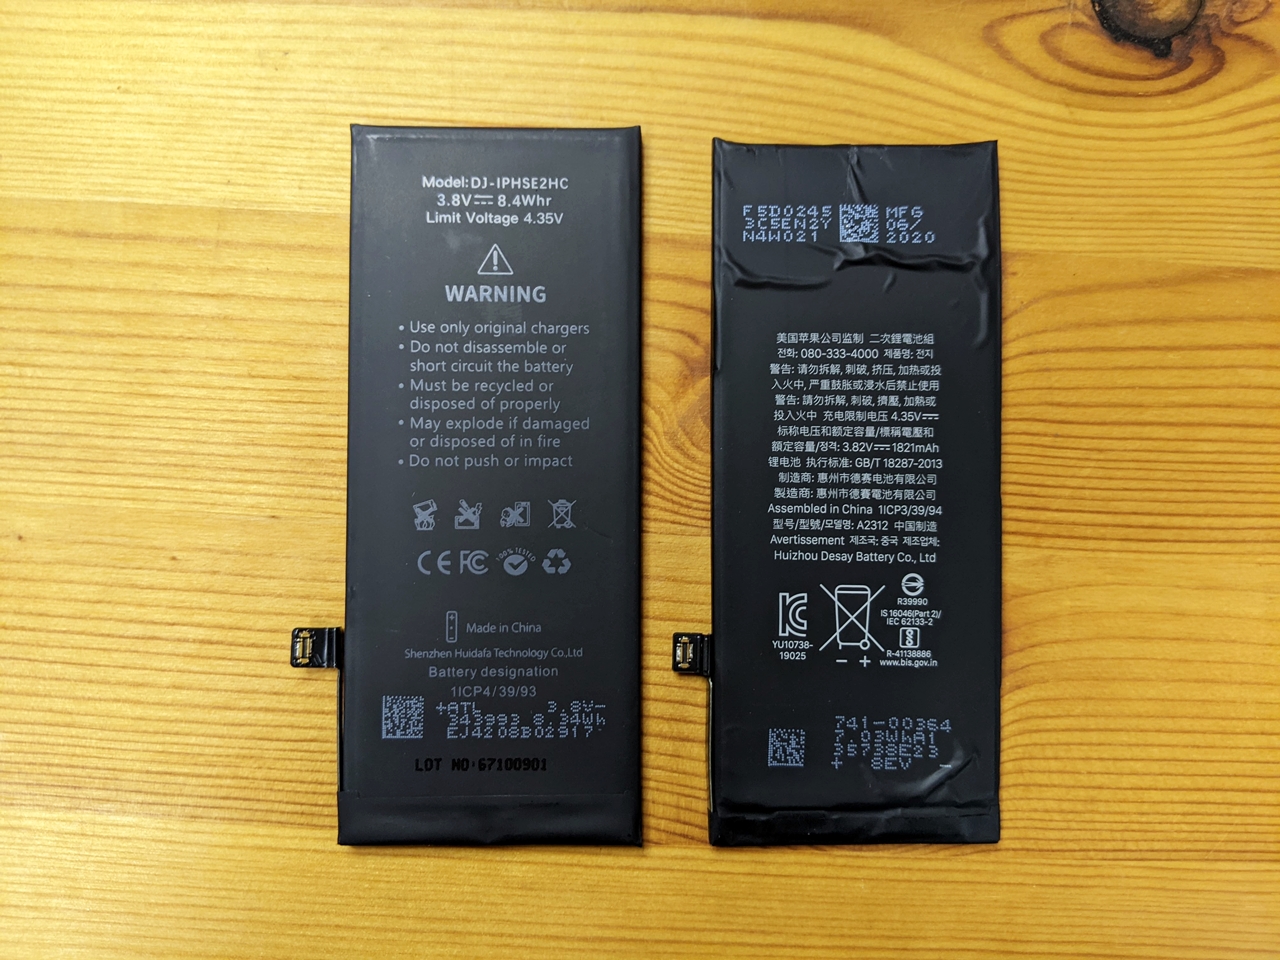 DEJI 새배터리 (왼) 애플 정품 배터리 (오) : 뒷면